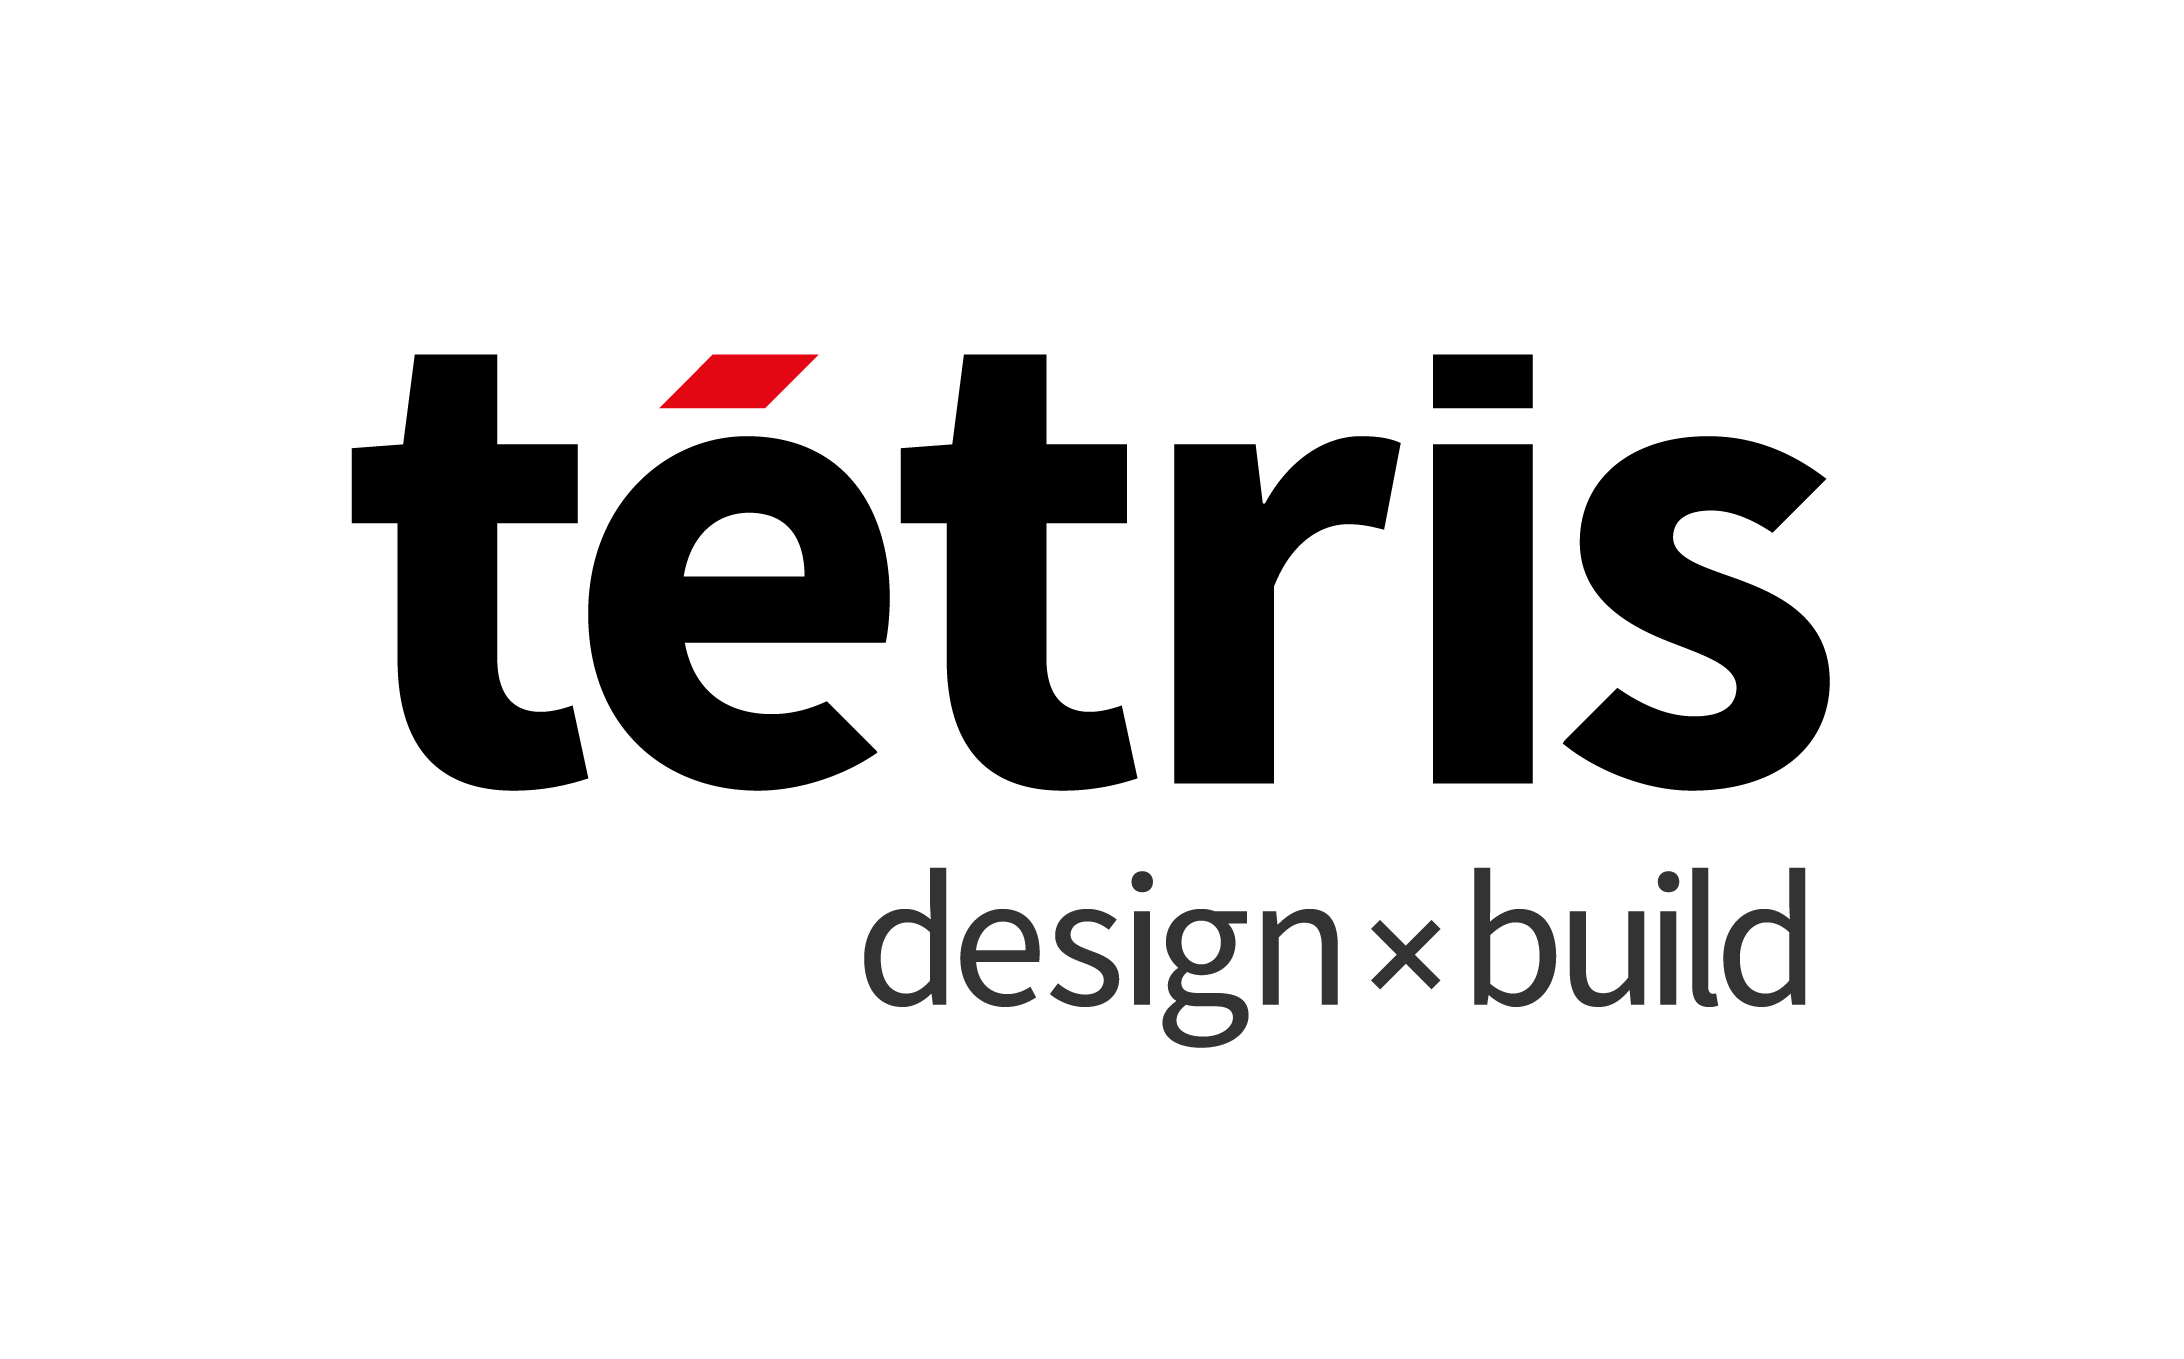 Tétris Design & Build Sàrl